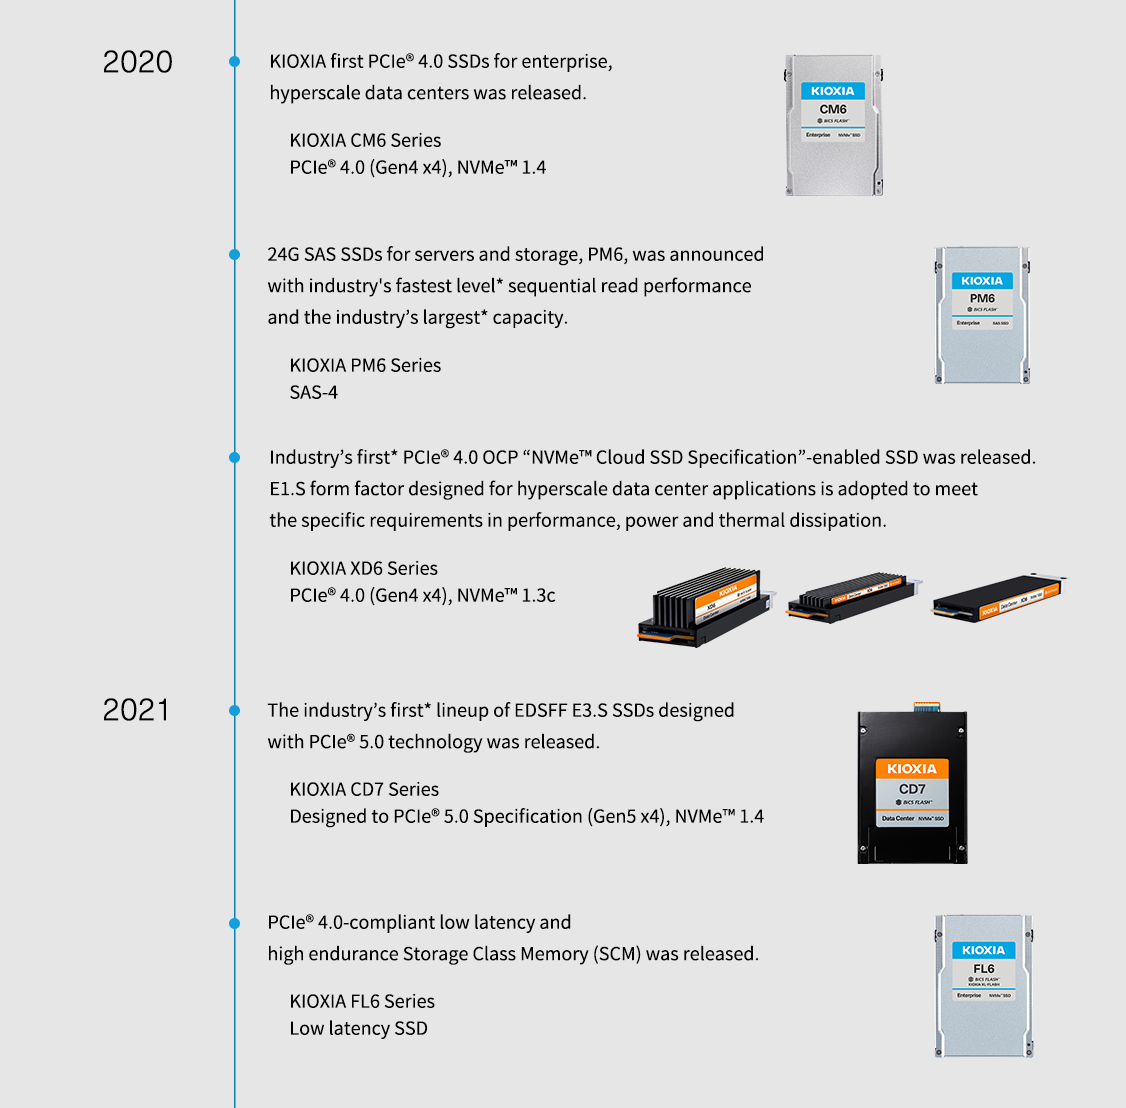 2020. Κυκλοφόρησαν οι πρώτοι δίσκοι PCIe® 4.0 SSD της KIOXIA για επιχειρήσεις και κέντρα δεδομένων υπερκλίμακας. Σειρά KIOXIA CM6 PCIe® 4.0 (Gen4 x4), NVMe™ 1.4. Οι δίσκοι 24G SAS SSD για διακομιστές και αποθήκευση, PM6, ανακοινώθηκαν με το ταχύτερο επίπεδο* απόδοσης διαδοχικής ανάγνωσης του κλάδου και τη μεγαλύτερη* χωρητικότητα του κλάδου. Σειρά KIOXIA PM6 SAS-4. Κυκλοφόρησε ο πρώτος* δίσκος SSD με δυνατότητα υποστήριξης PCIe ® 4.0 OCP «NVMe™ Cloud Specification SSD». Ο συντελεστής μορφής E1.S που έχει σχεδιαστεί για εφαρμογές κέντρου δεδομένων υπερκλίμακας υιοθετείται για να πληροί τις ειδικές απαιτήσεις στην απόδοση, την ισχύ και τη θερμική διάχυση. Σειρά KIOXIA XD6 PCIe® 4.0 (Gen4 x4), NVMe™ 1.3c. 2021. Κυκλοφόρησε η πρώτη* σειρά EDSFF E3.S SSD στον κλάδο που σχεδιάστηκε με τεχνολογία PCIe® 5.0. Σειρά KIOXIA CD7 σχεδιασμένη για την προδιαγραφή PCIe® 5.0 (Gen5 x4), NVMe™ 1.4. Κυκλοφόρησε μνήμη κατηγορίας αποθήκευσης (SCM) χαμηλής καθυστέρησης και υψηλής αντοχής, συμβατή με PCIe® 4.0. Σειρά KIOXIA FL6 Χαμηλή καθυστέρηση SSD